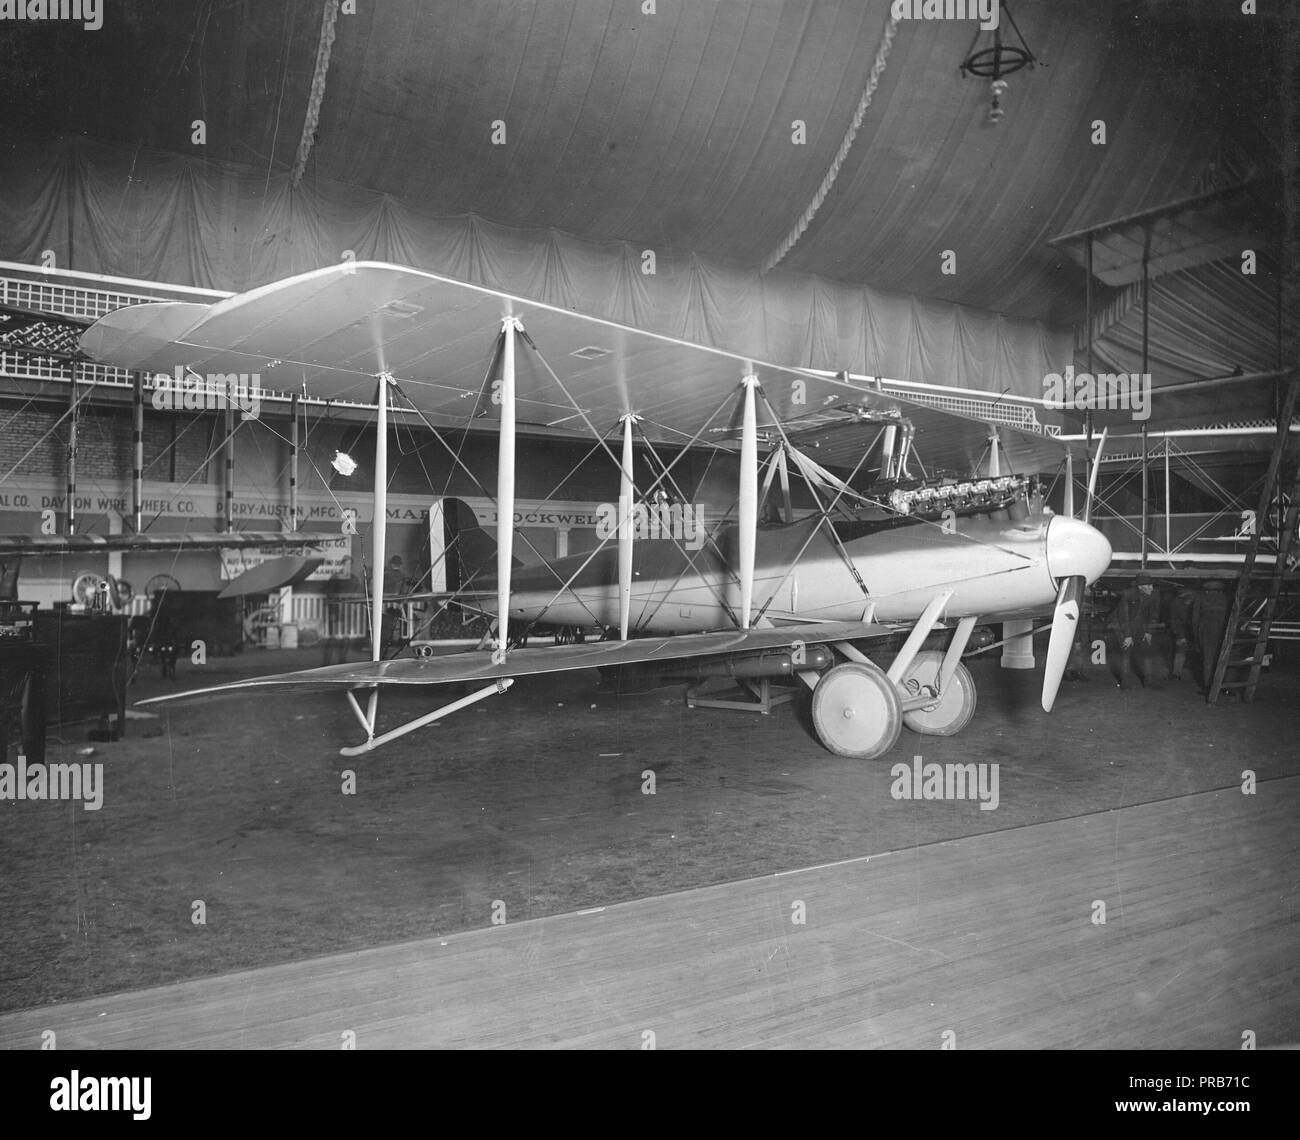 1919 - G-2 avion de combat révisé et connu sous le nom de "requin". Sur exposition à Aero Show, New York Banque D'Images